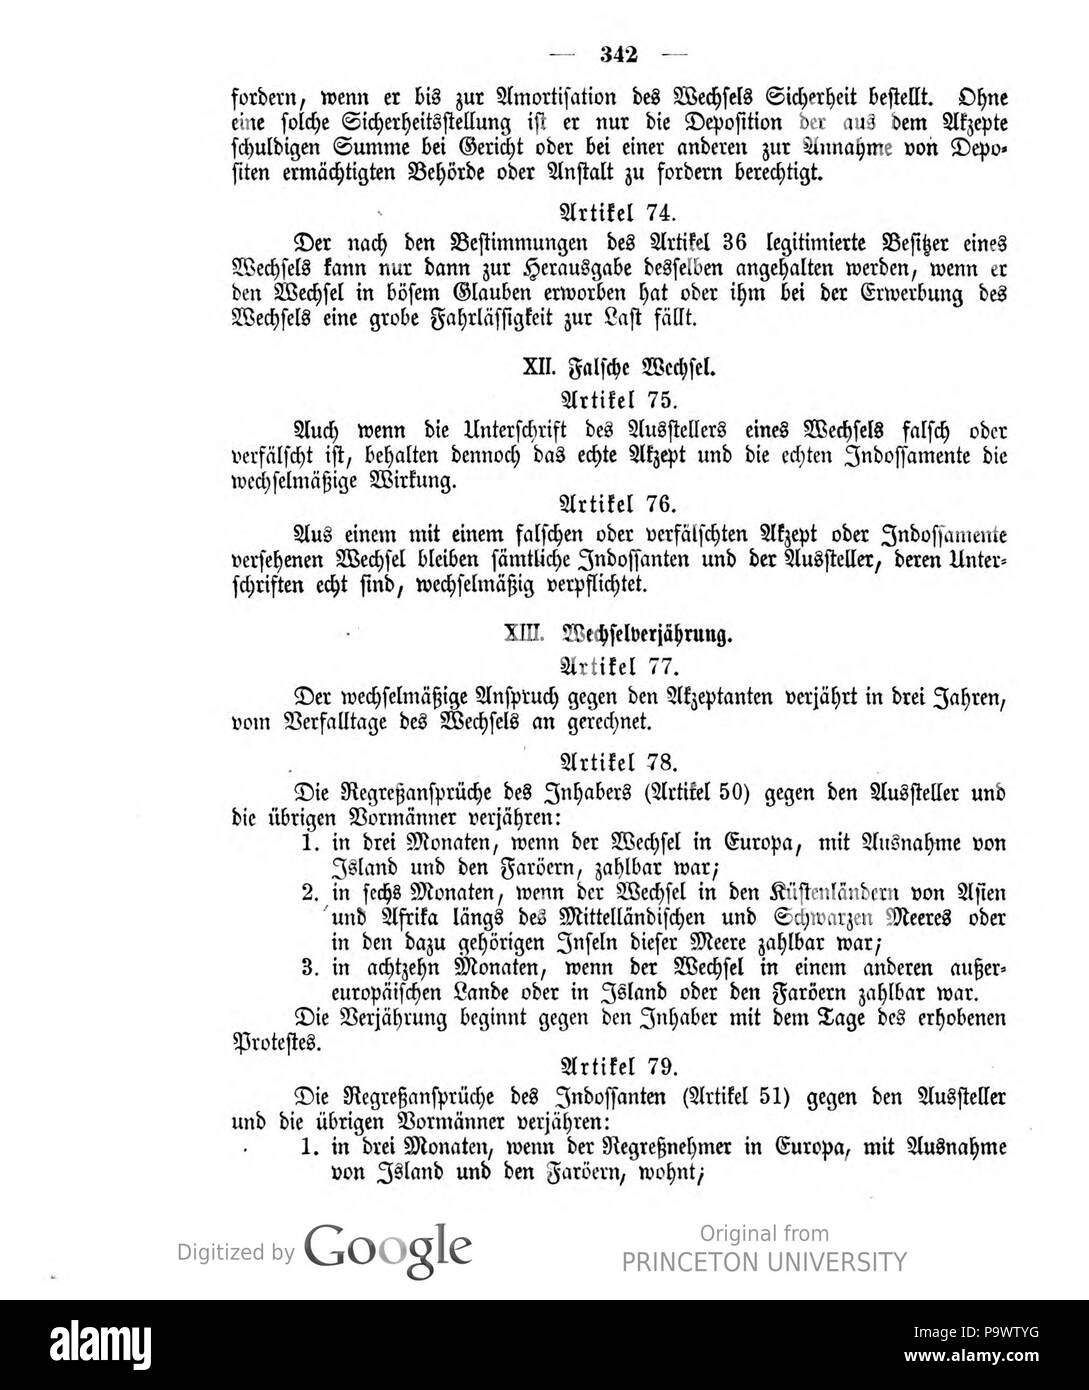 427 Deutsches Reichsgesetzblatt 1908 032 342 Stock Photo